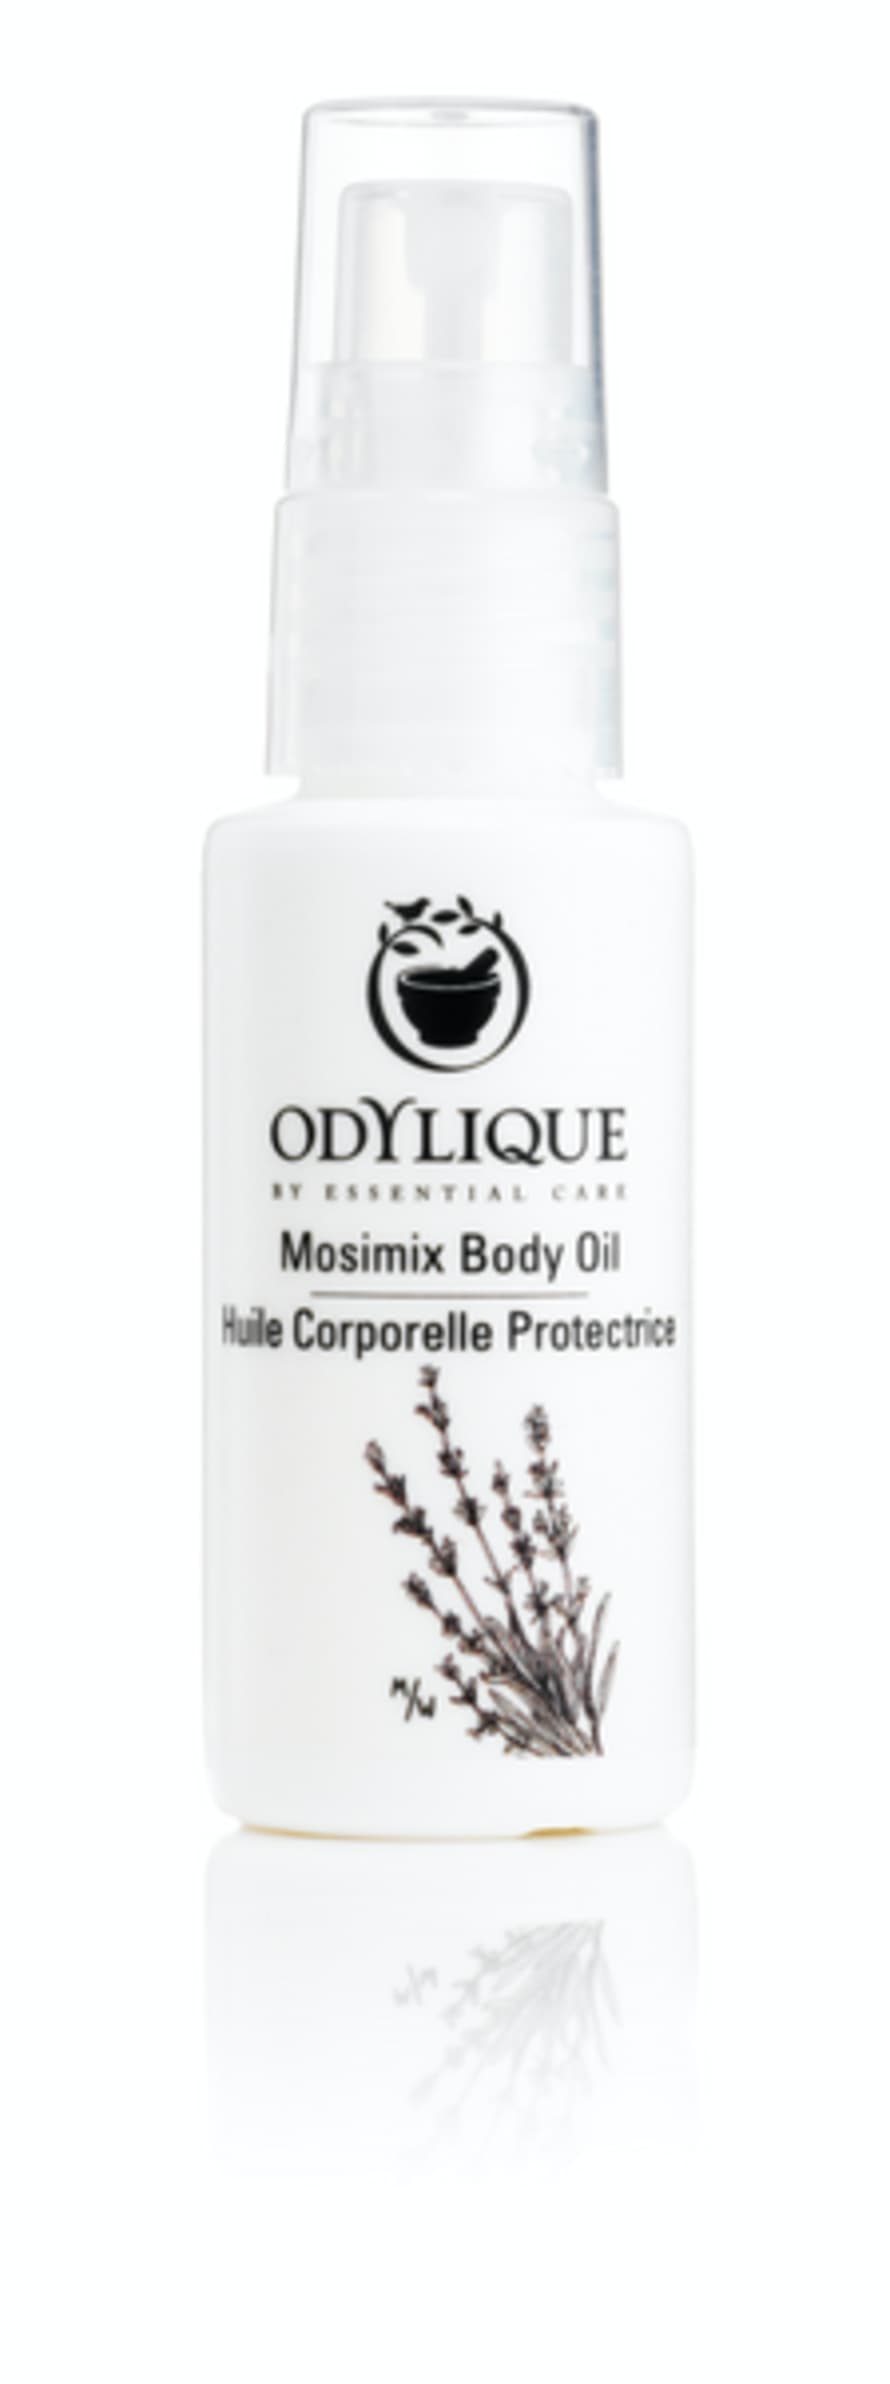 Odylique Mosimix Body Oil